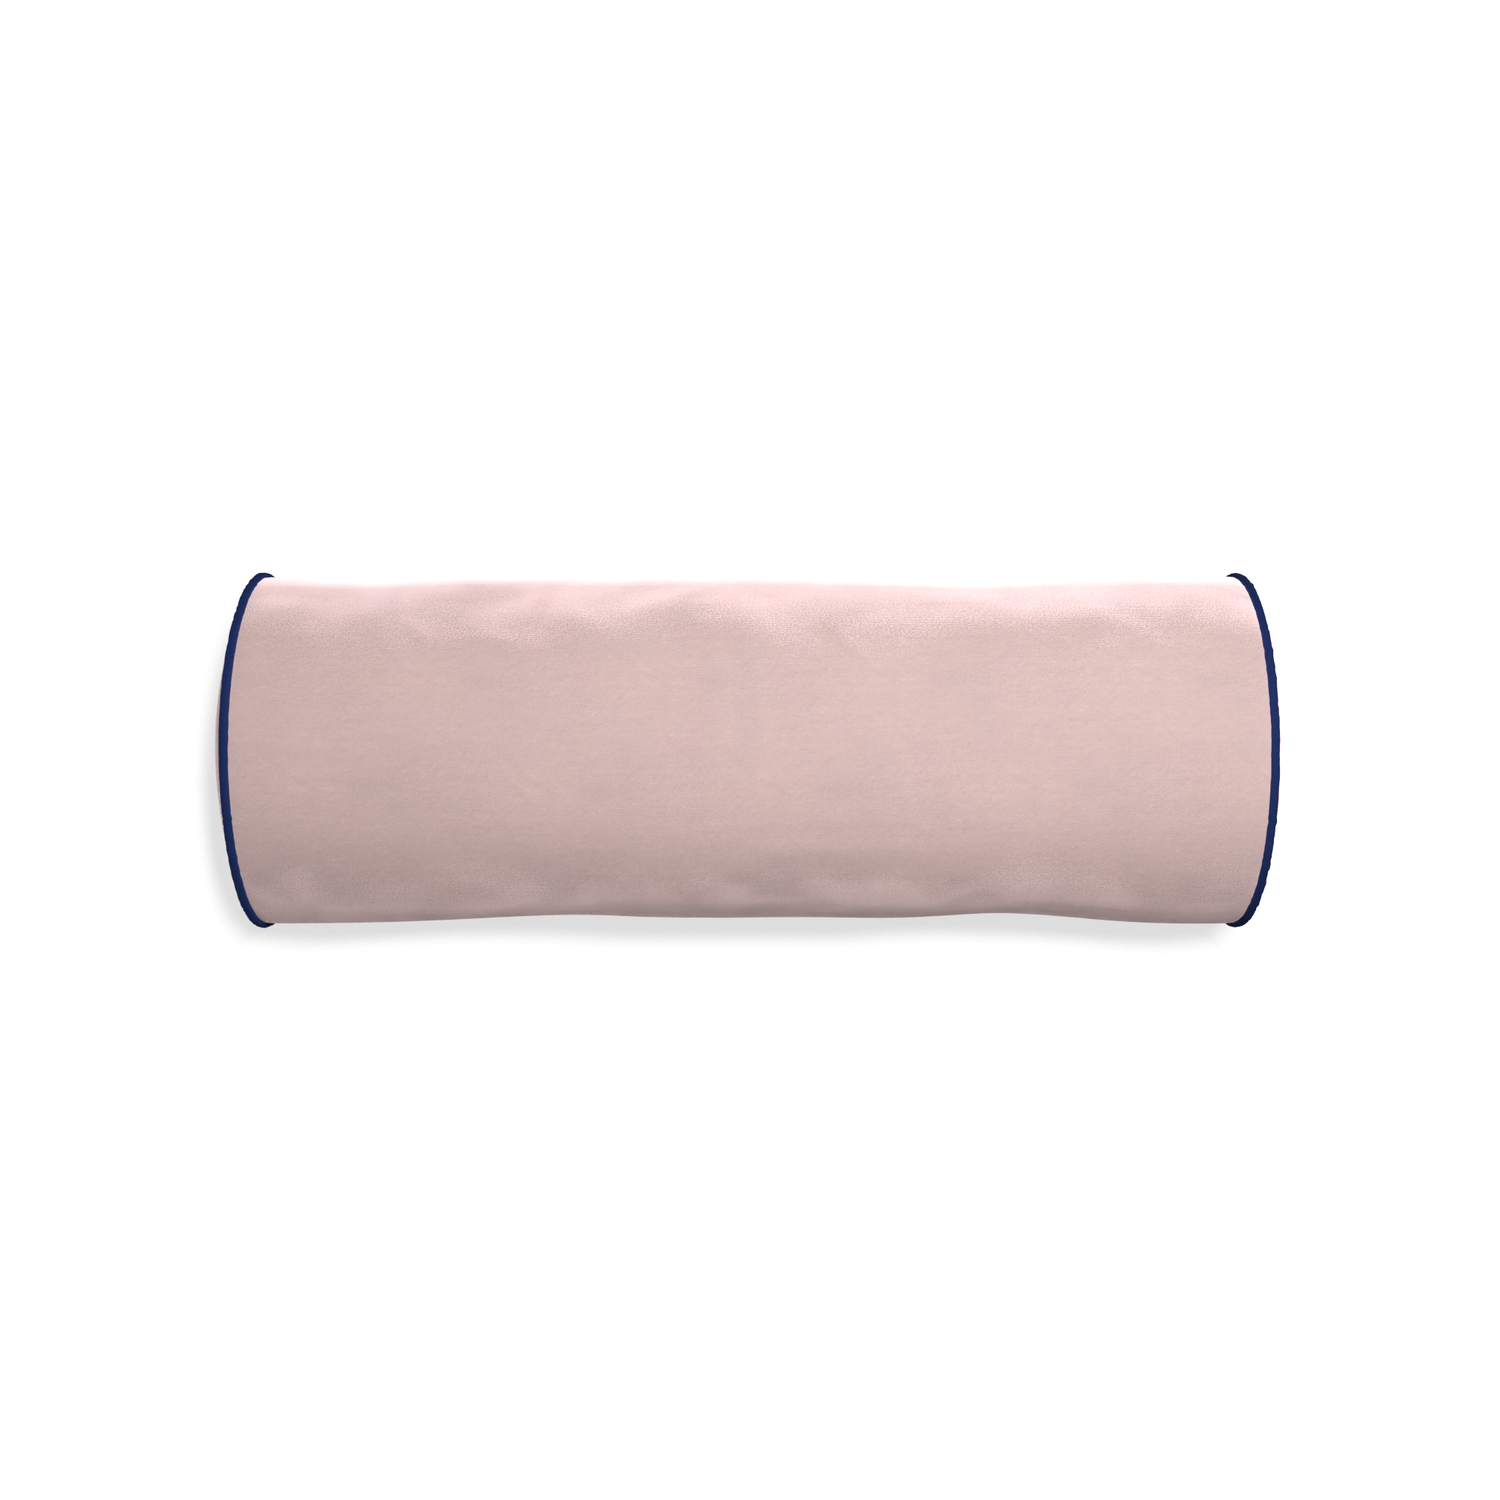 Bolster rose velvet custom pillow with midnight piping on white background